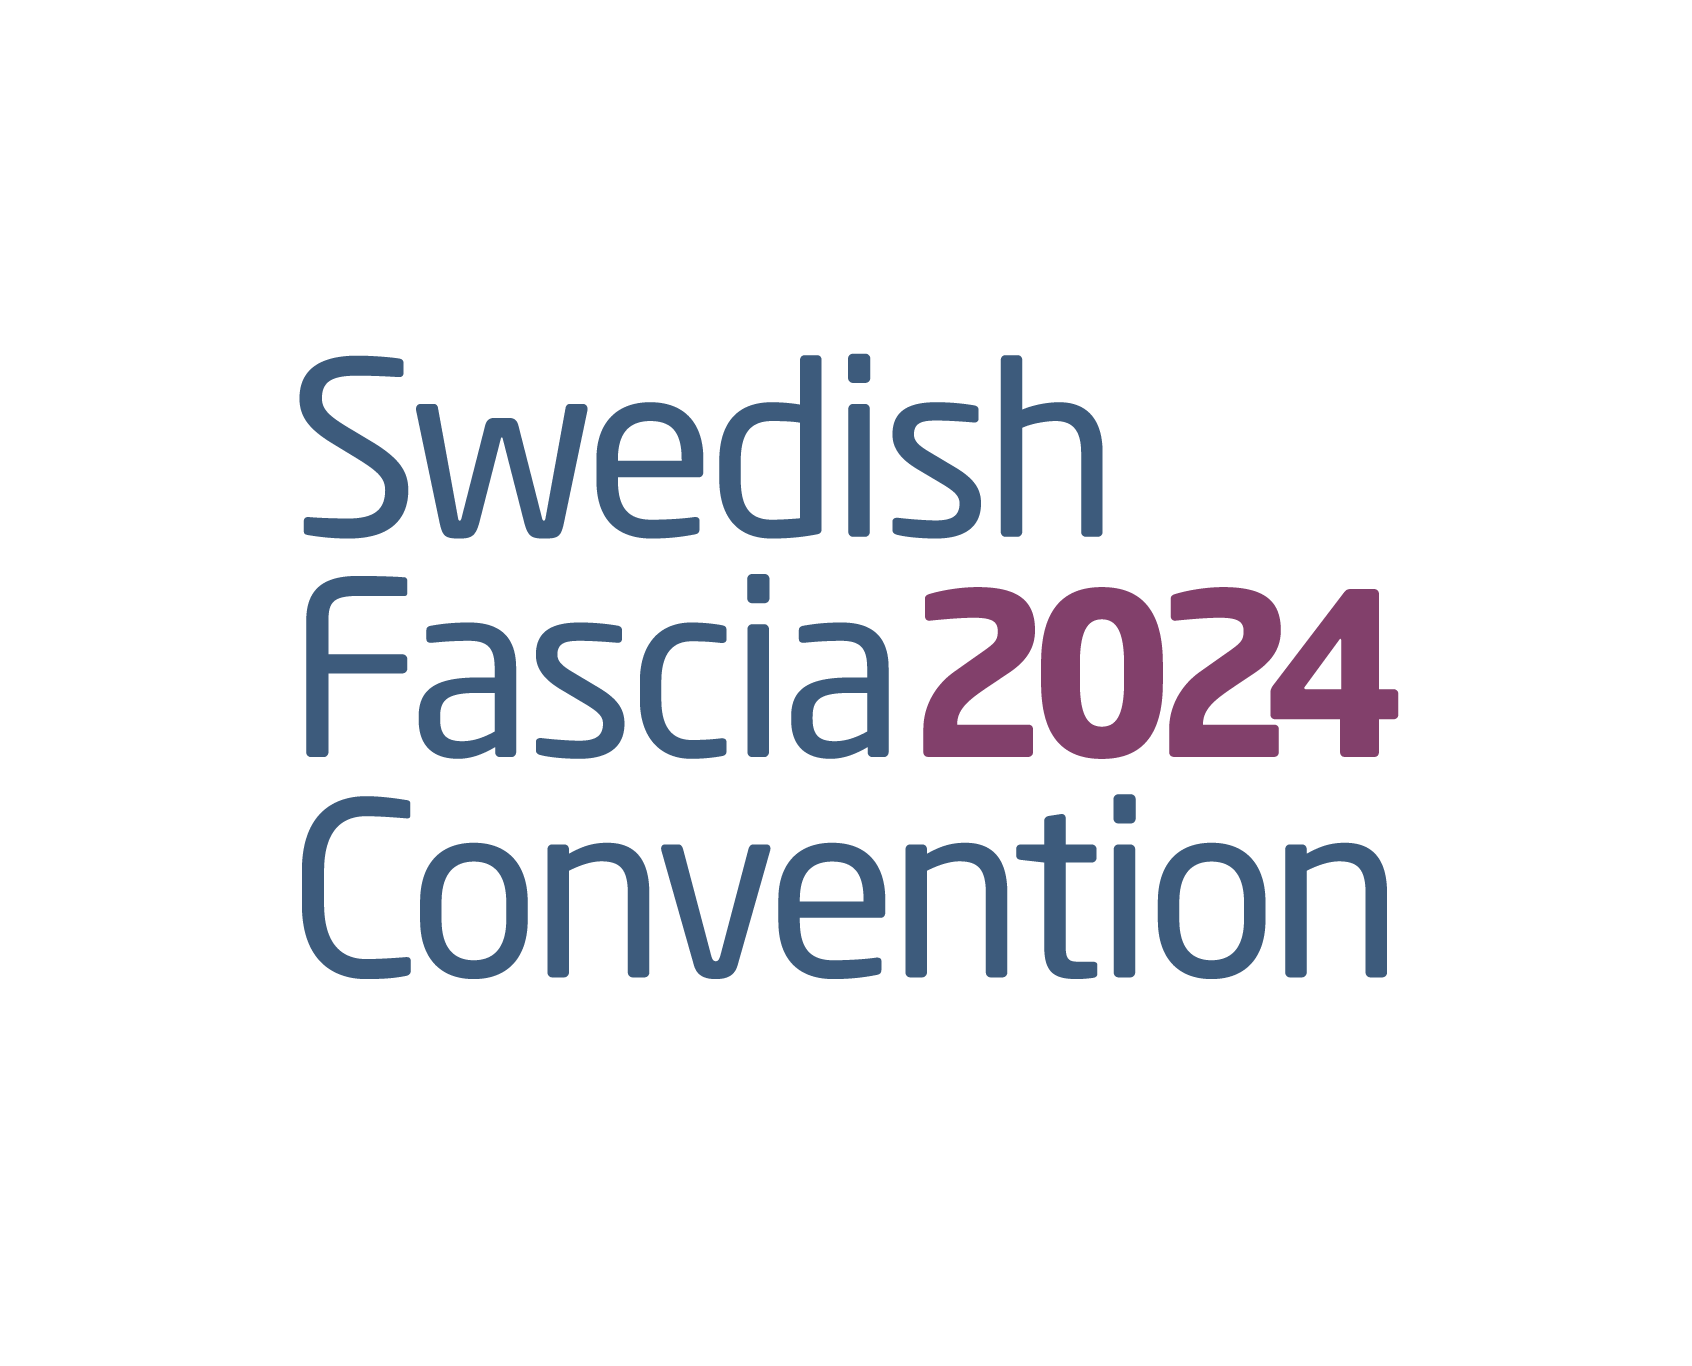 Swedish Fascia Convention